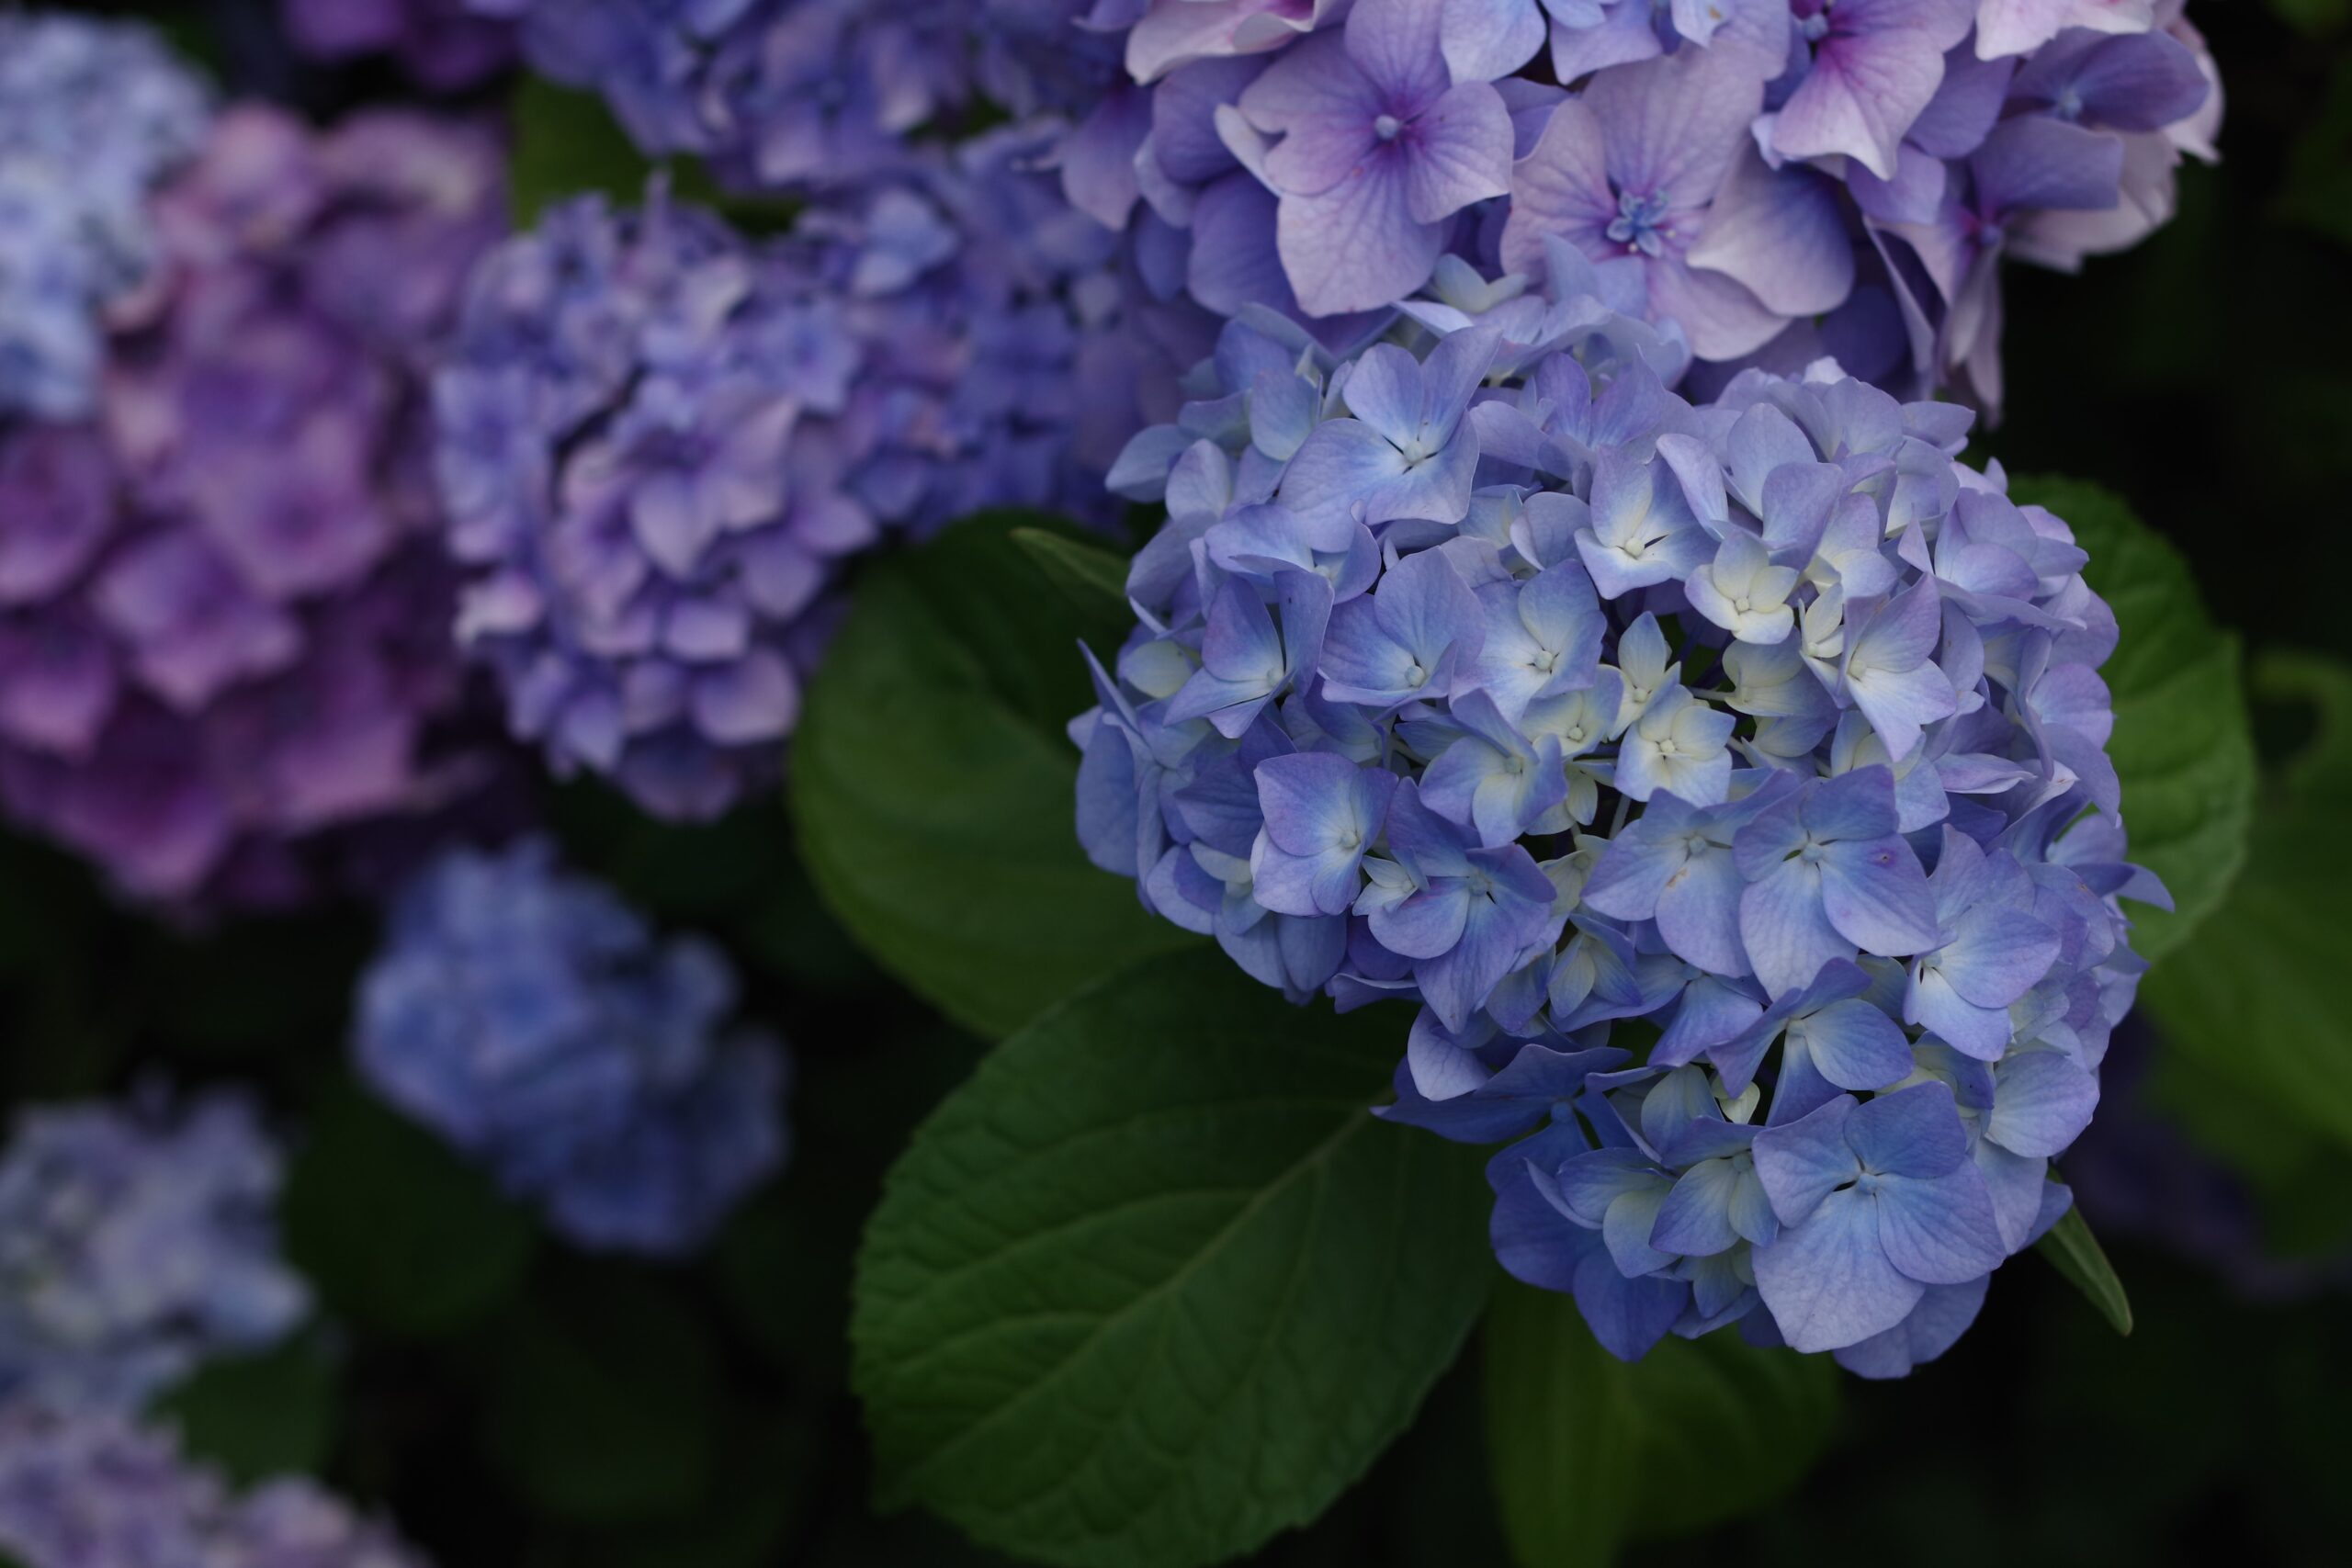 紫陽花 アジサイ ハイドレンジア 旬を迎えた梅雨の代表花 植える土によって色が変わる 花瓶に生ける際のコツは白いワタを取ること ミニマフローの豊かな暮らし